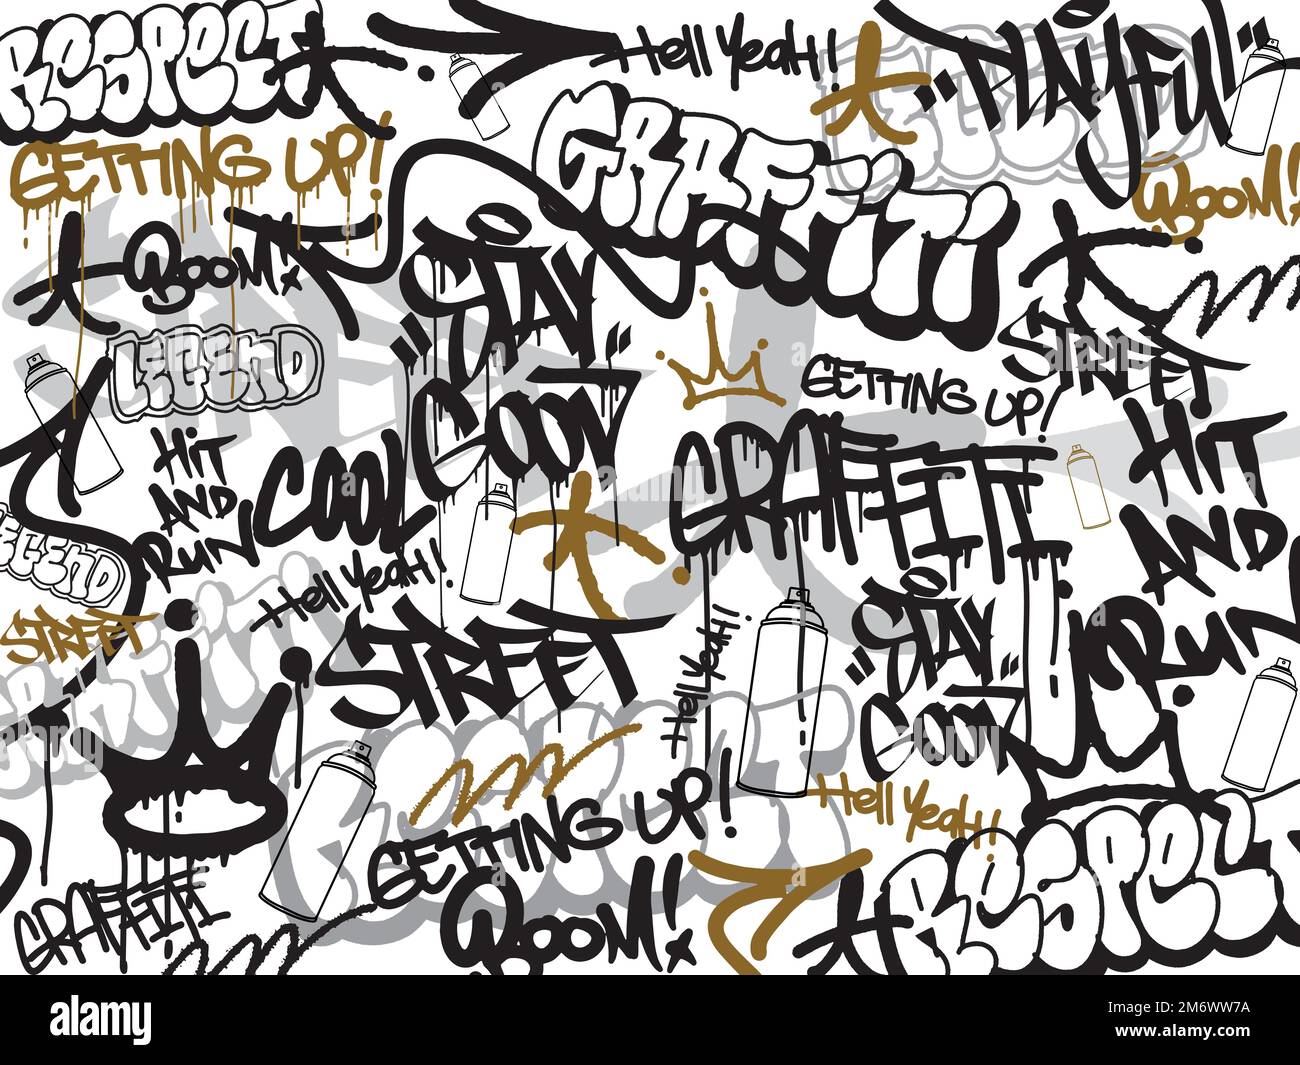 Graffiti-Hintergrund mit Überwürfen und Tagging, handgezeichnet. Street Art Graffiti urbanes Thema für Drucke, Banner und Textilien im Vektorformat. Stock Vektor